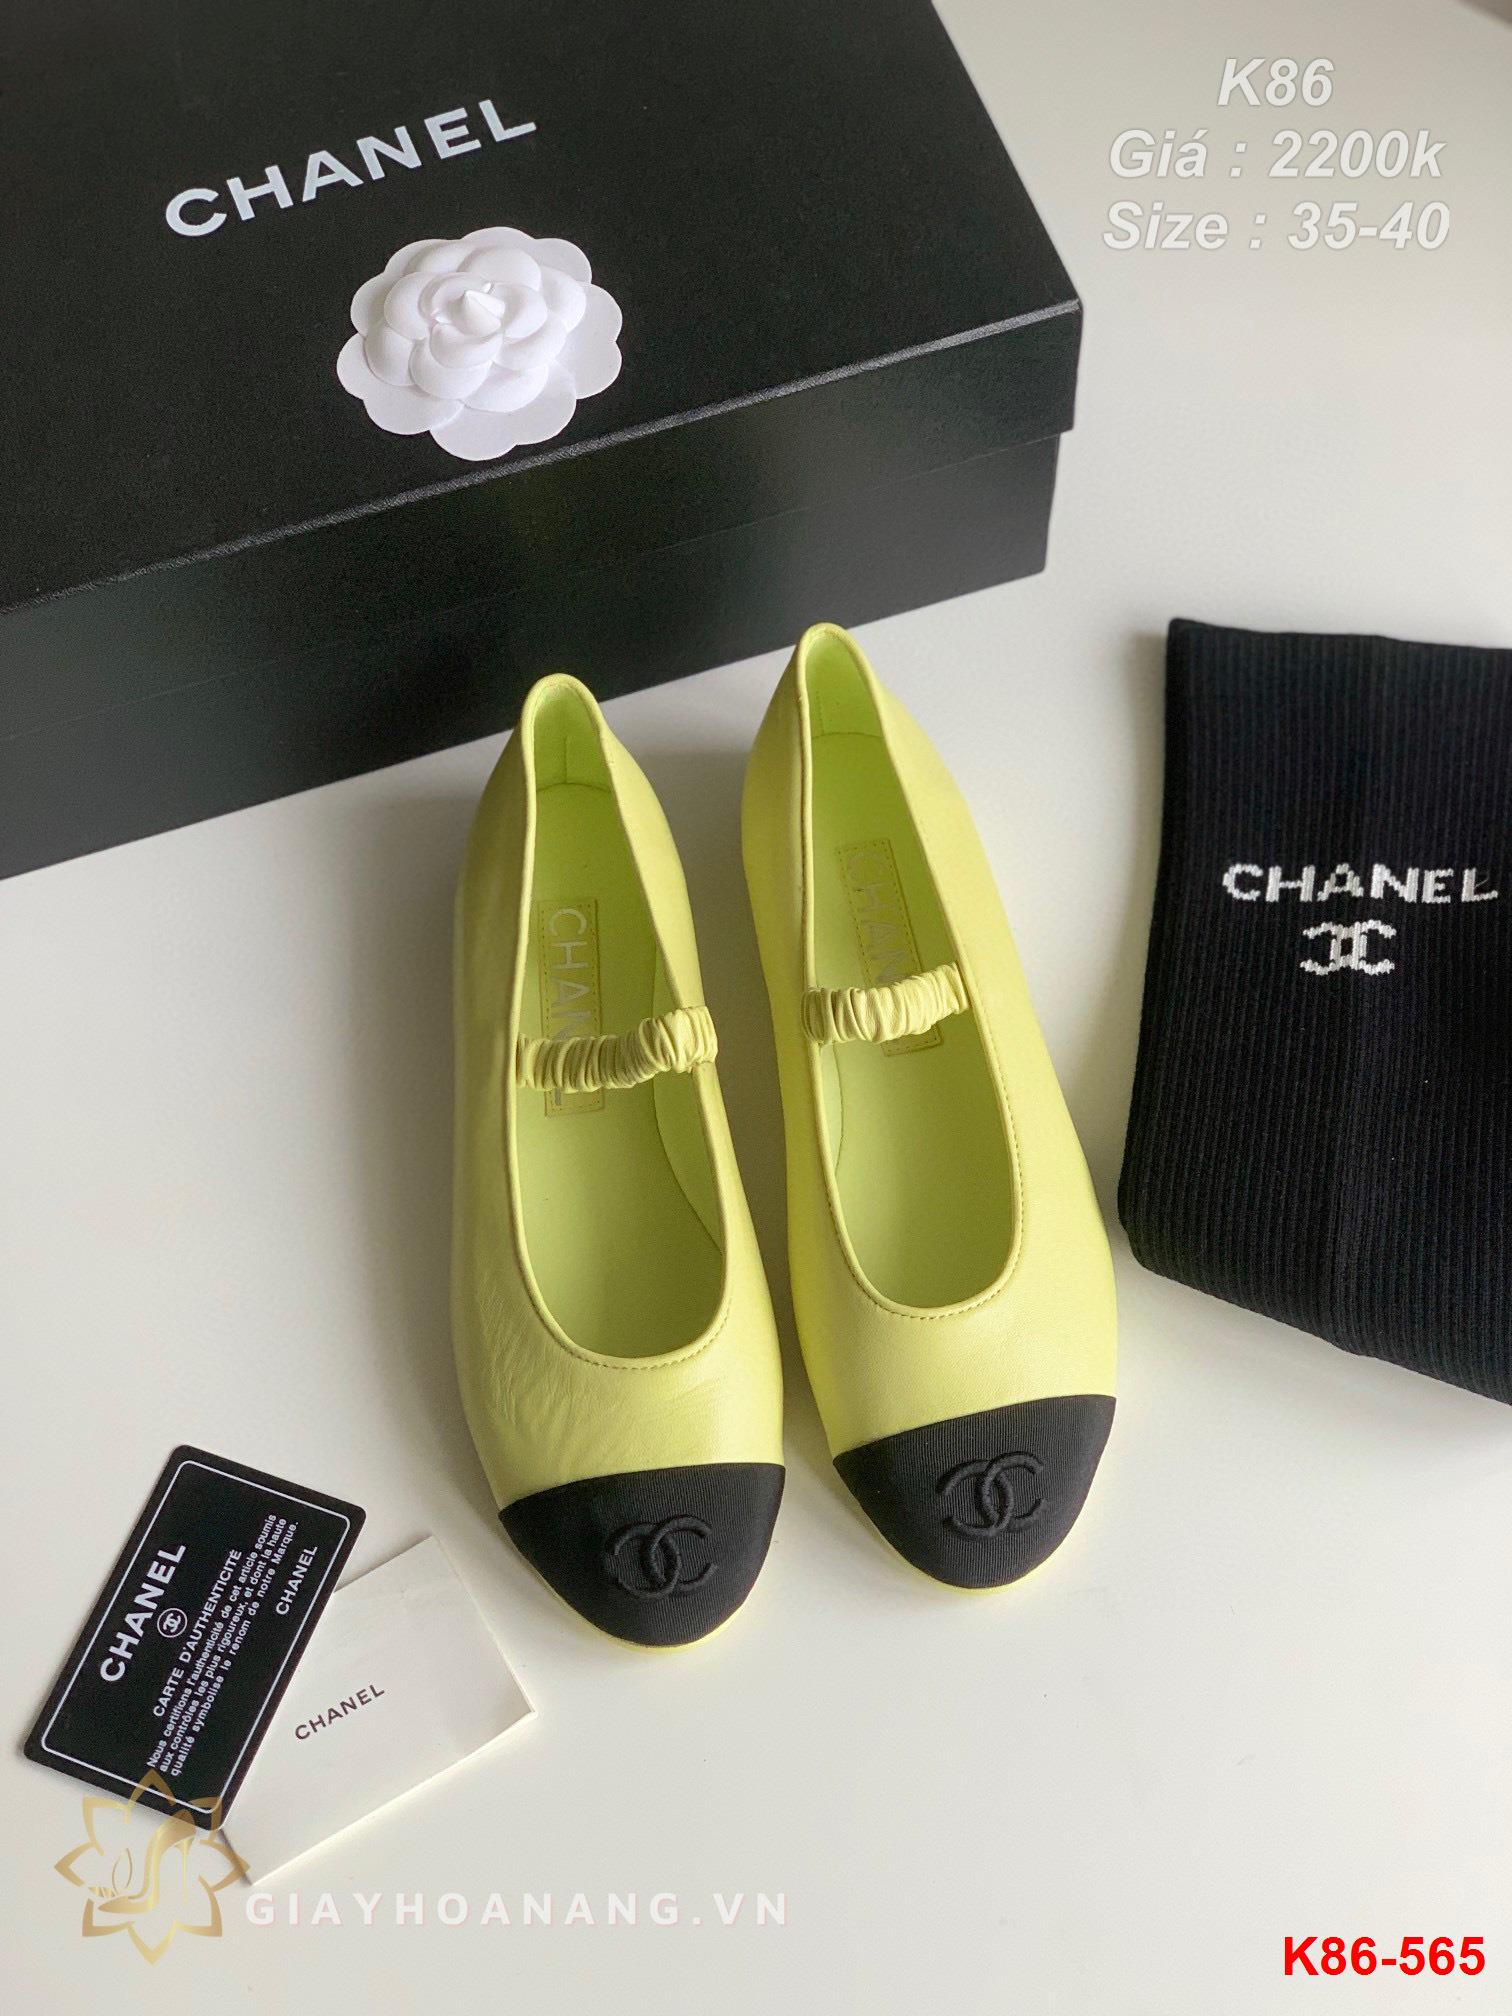 K86-565 Chanel giày bệt siêu cấp